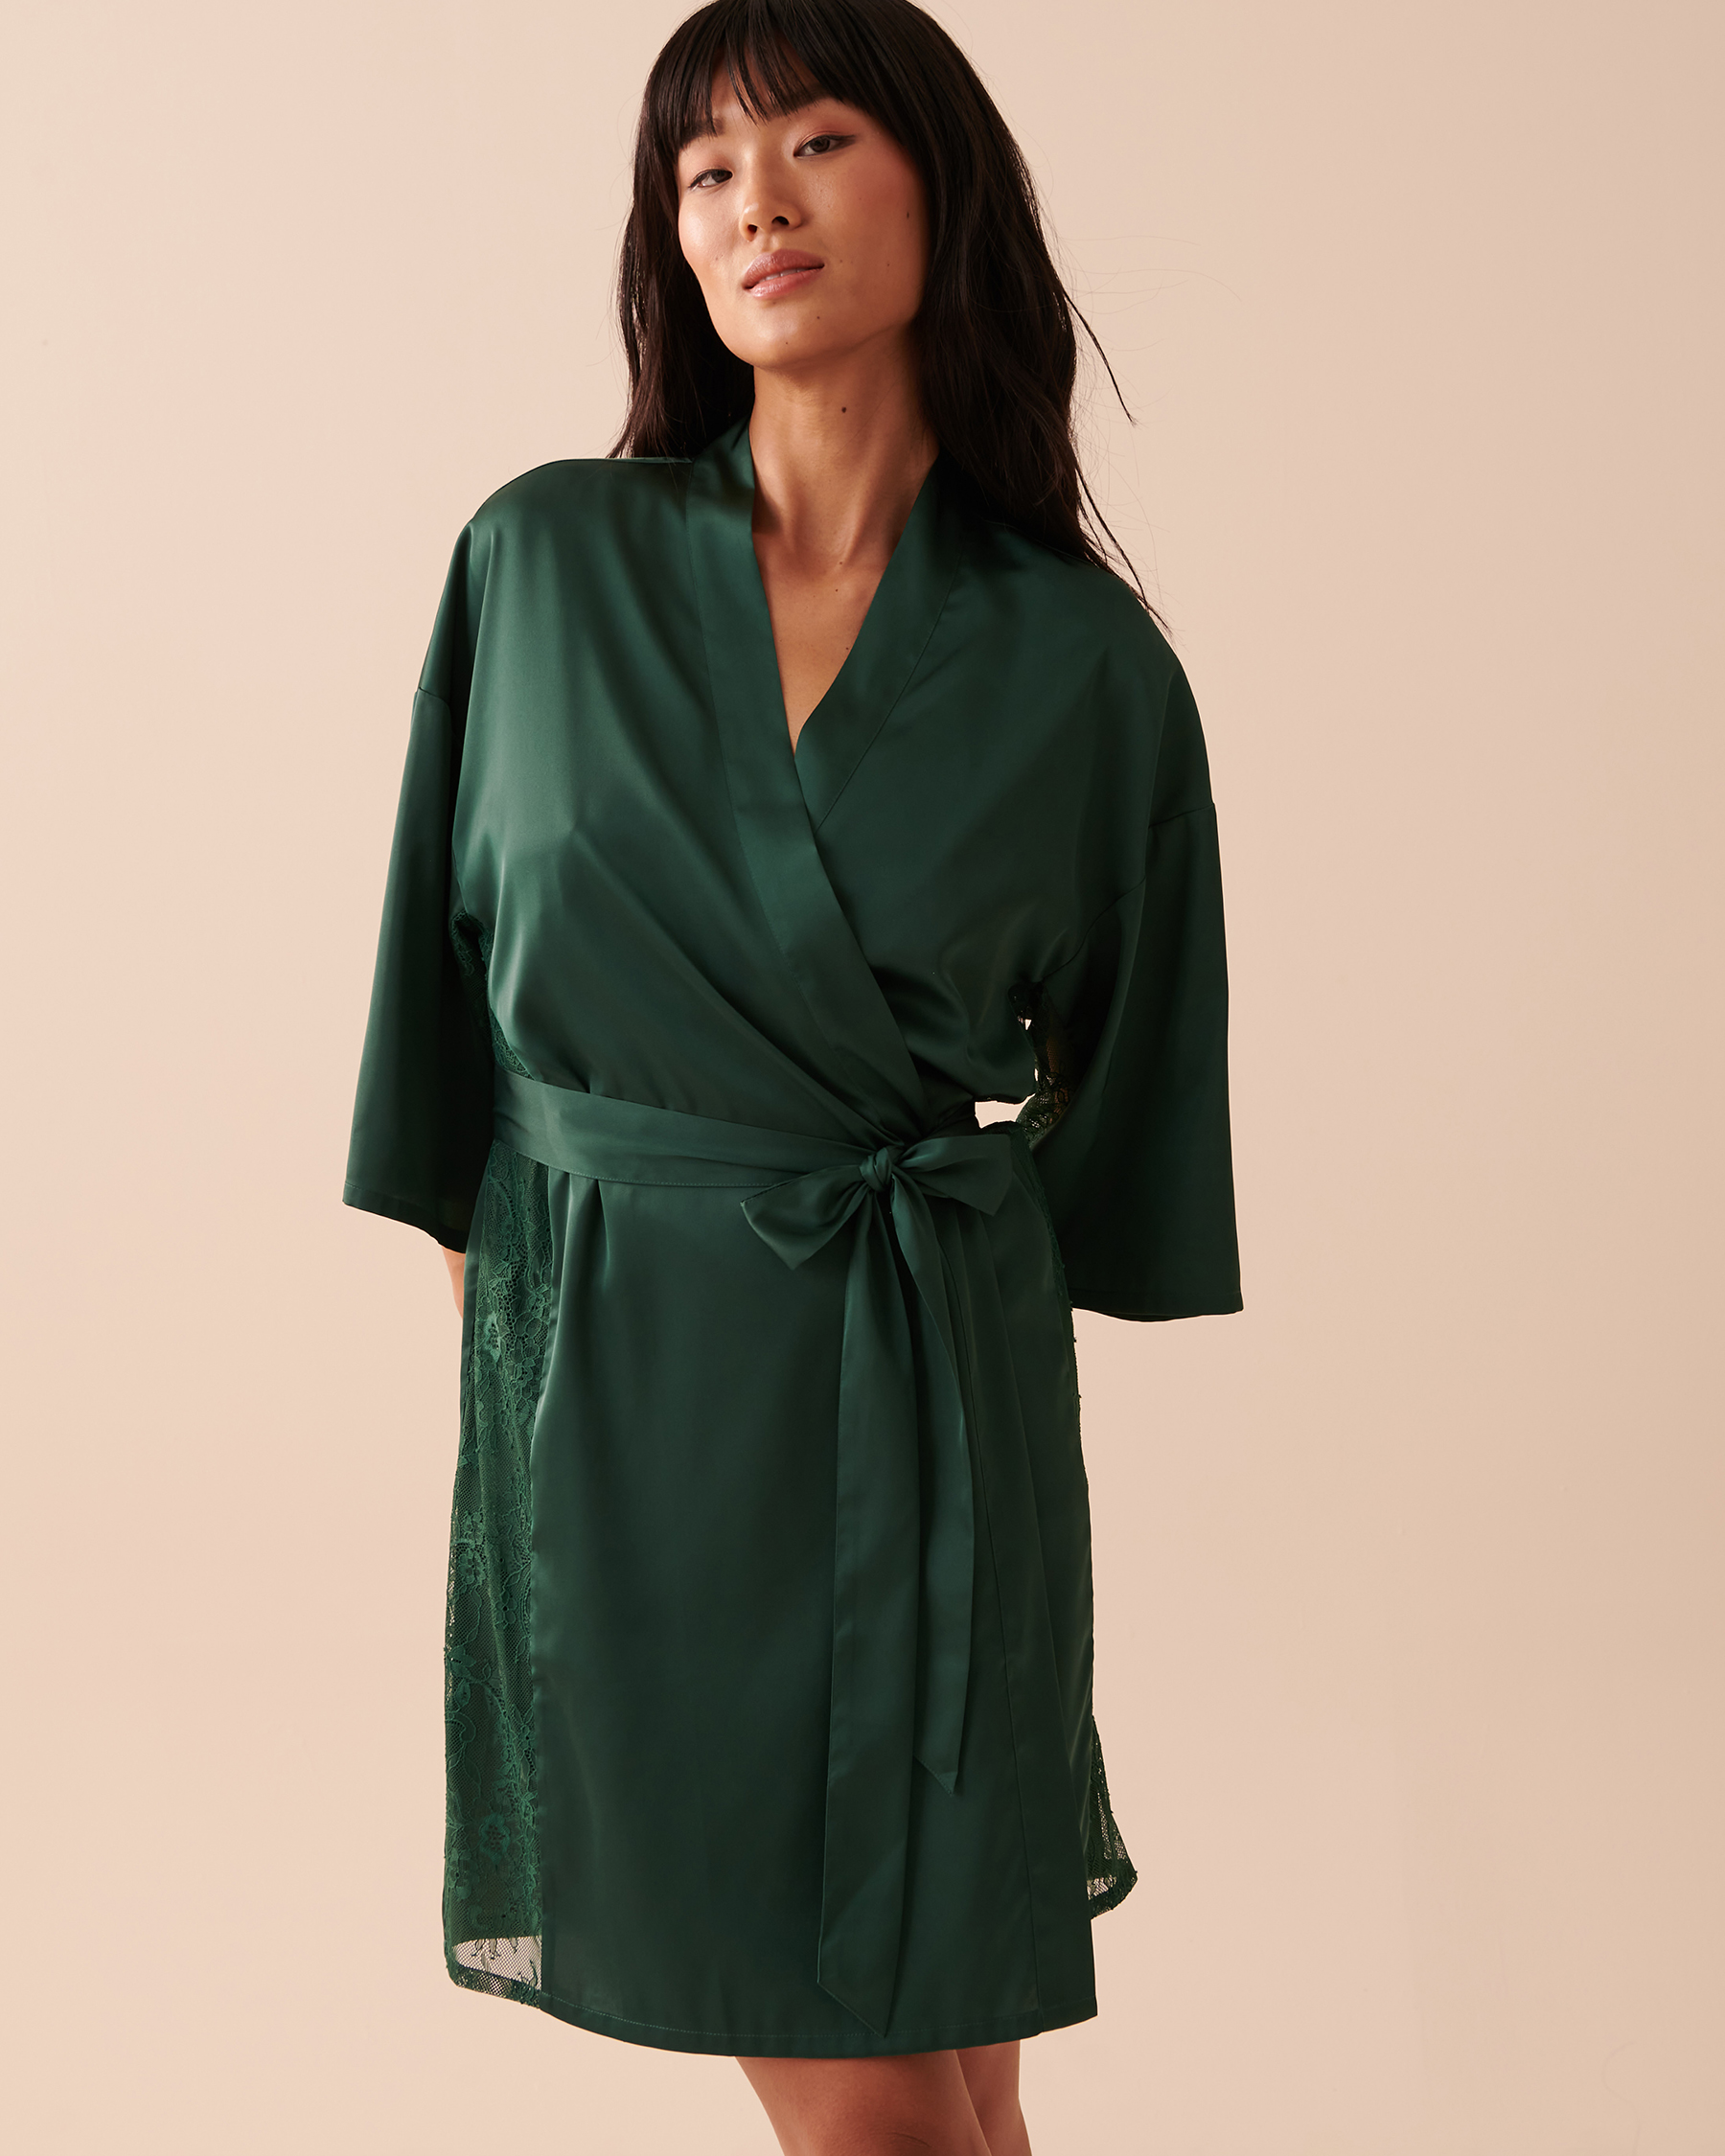 la Vie en Rose Women’s Pine Green Satin and Lace Kimono